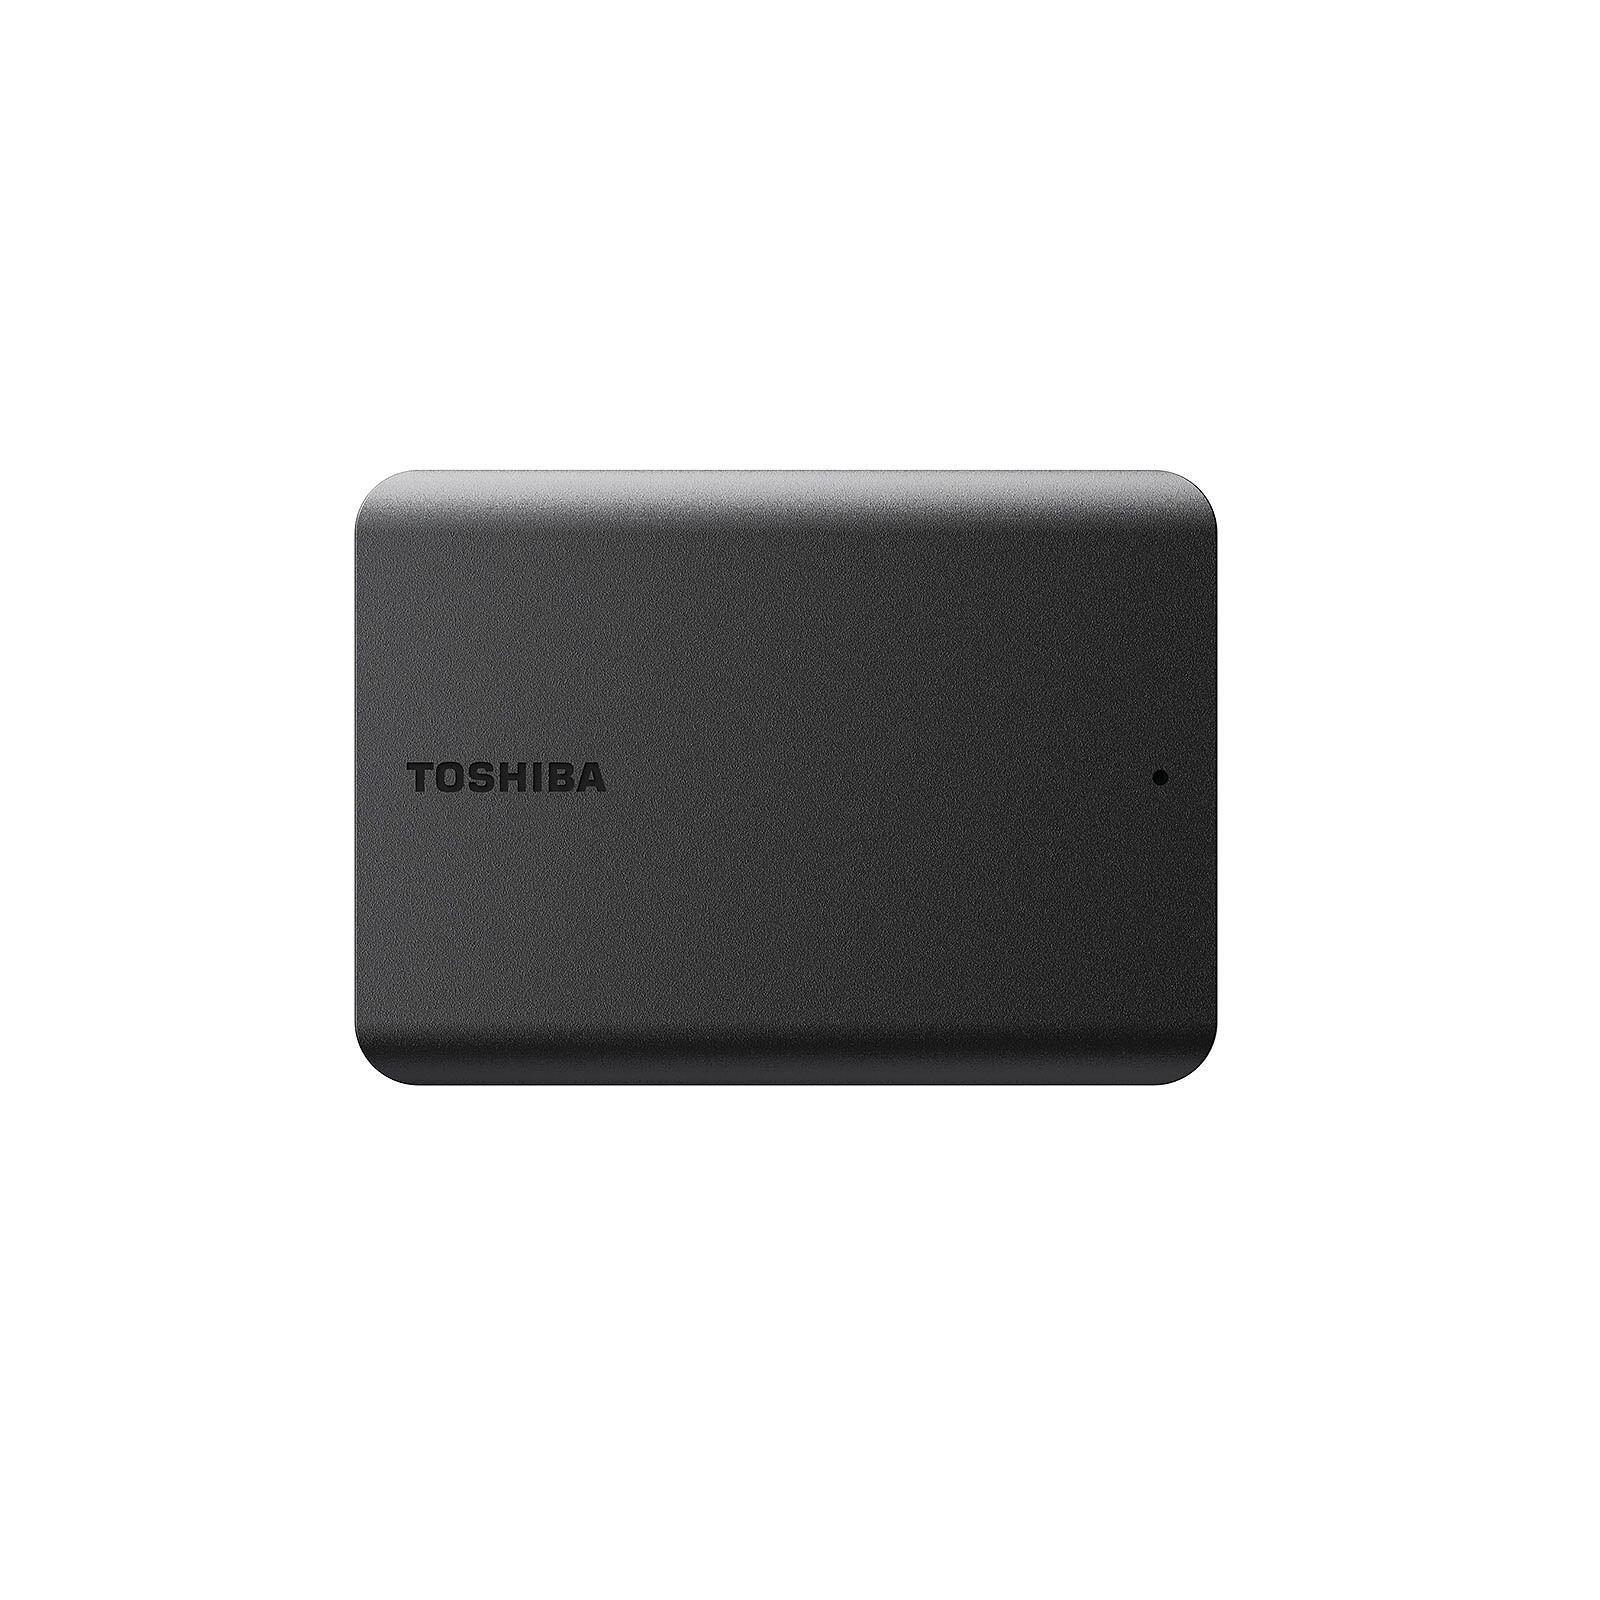 Toshiba Canvio Gaming 1 To Noir - Disque dur externe - Garantie 3 ans LDLC